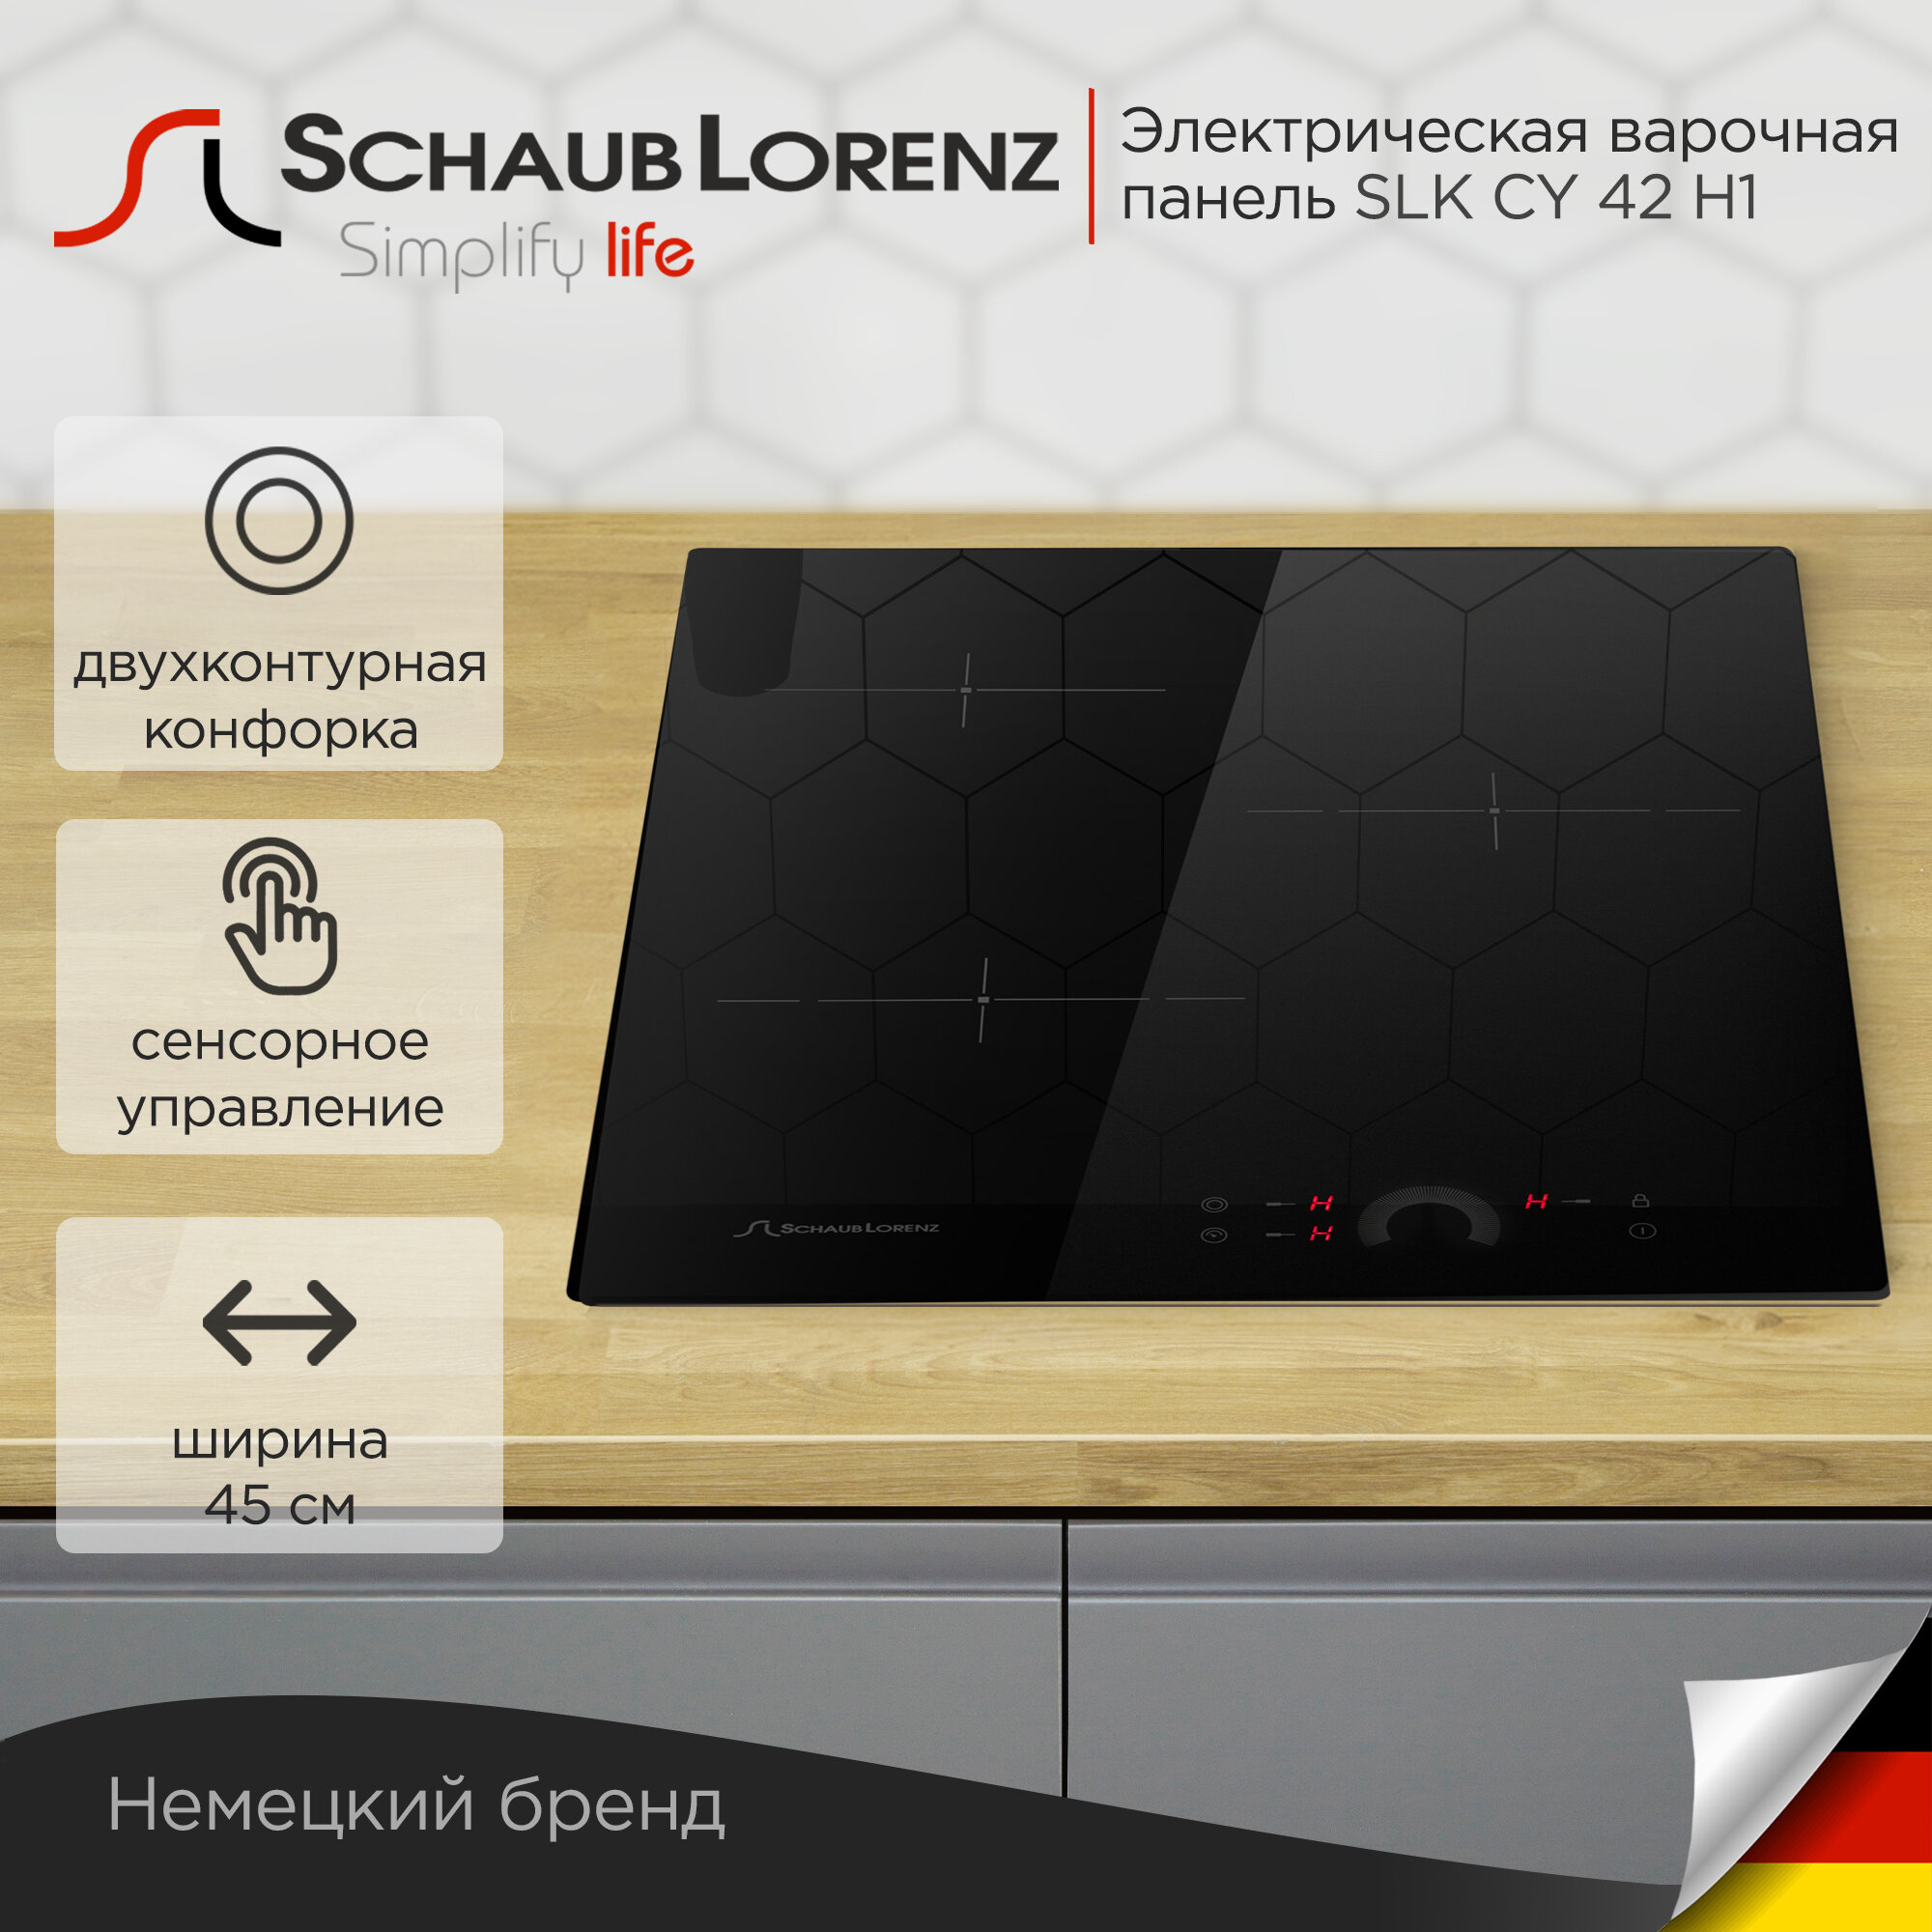 Электрическая встраиваемая варочная панель Schaub Lorenz SLK CY 42 H1, 45см, черный, стеклокерамика